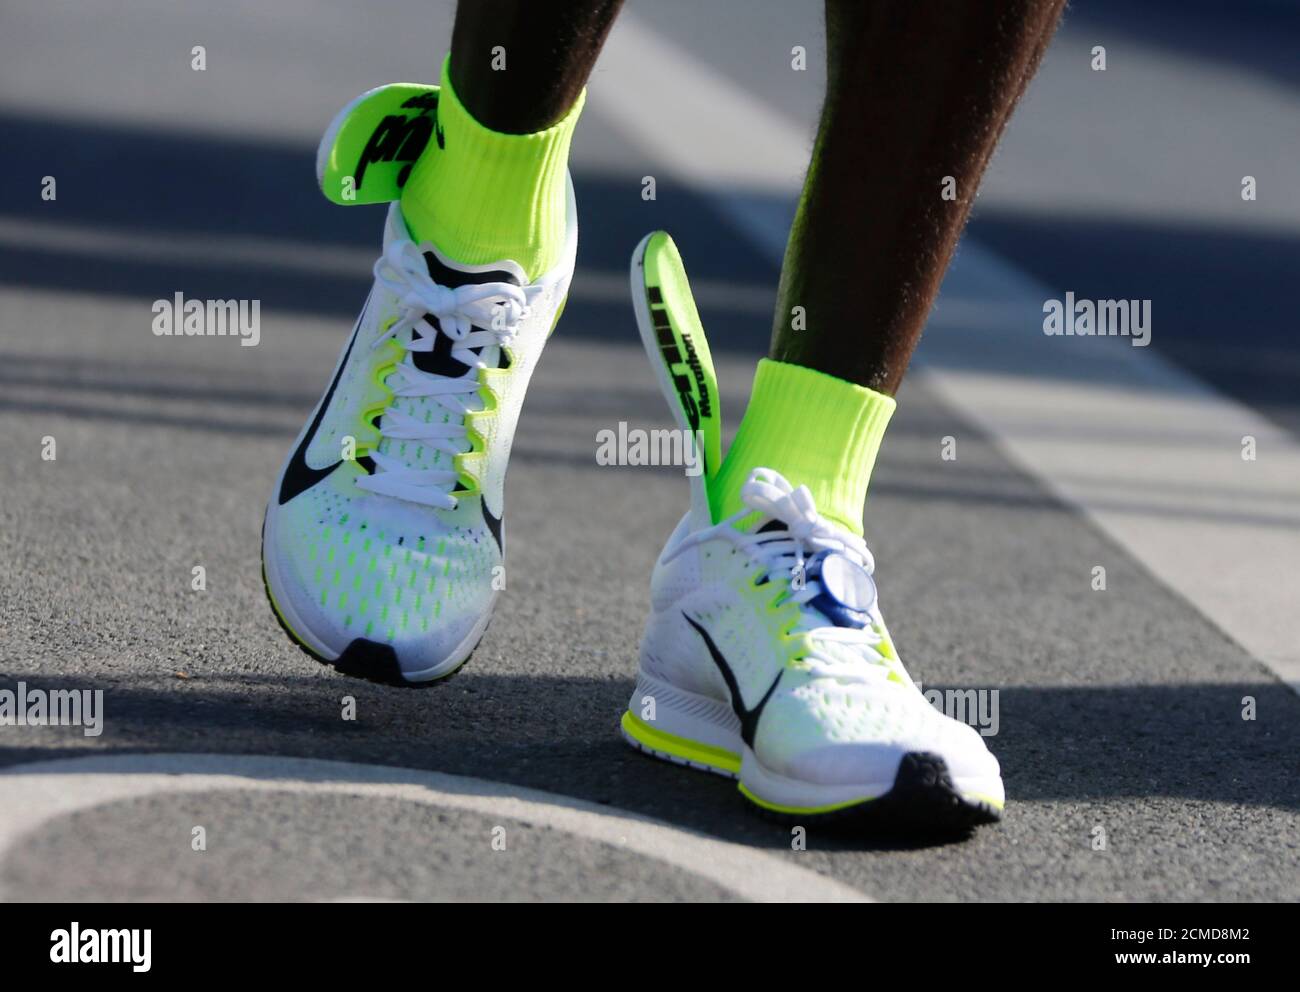 Die Einlegesohlen der Laufschuhe von Eliud Kipchoge aus Kenia sind bis zu  seinen Knöcheln rutscht zu sehen, nachdem er die Ziellinie überquert hat,  um den 42. Berlin-Marathon der Männer zu gewinnen, in